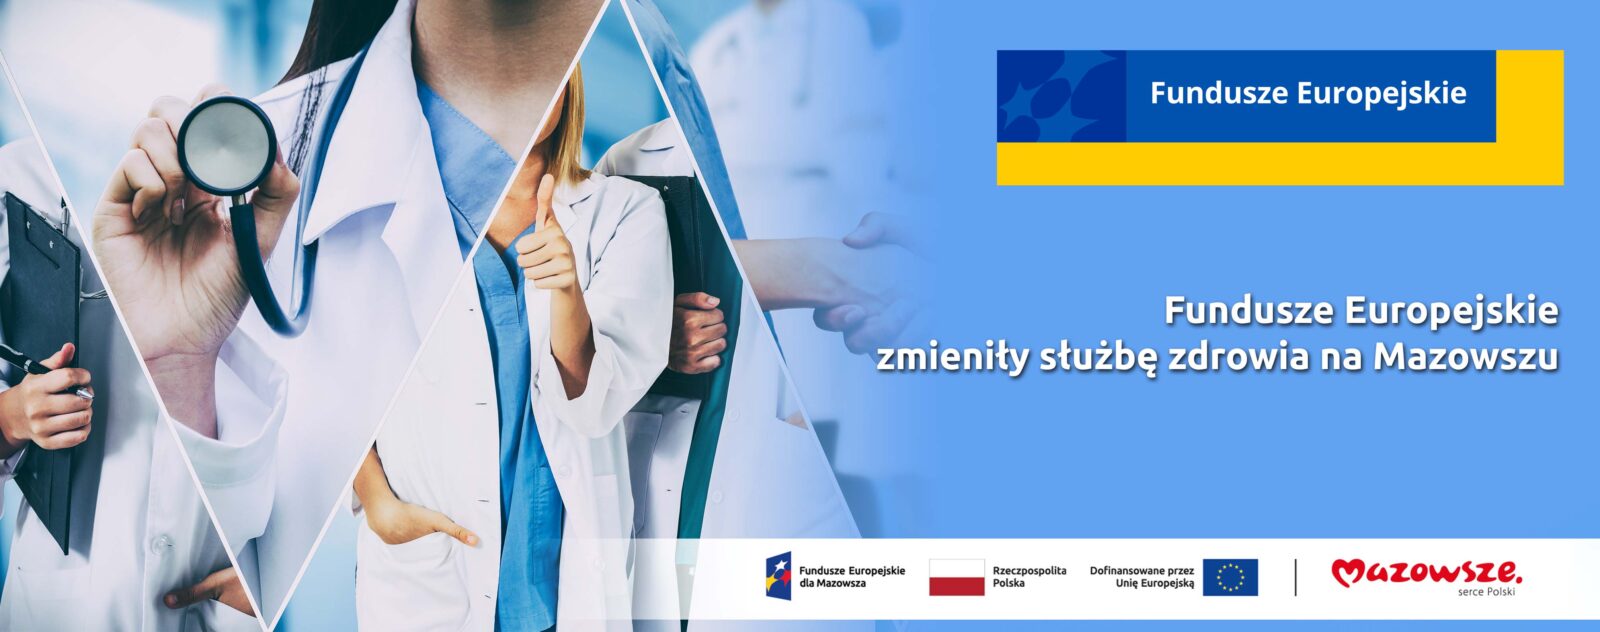 Grafika przedstawia napis Fundusze Europejskie zmieniły służbę zdrowia na Mazowszu. W tle widać lekarzy.